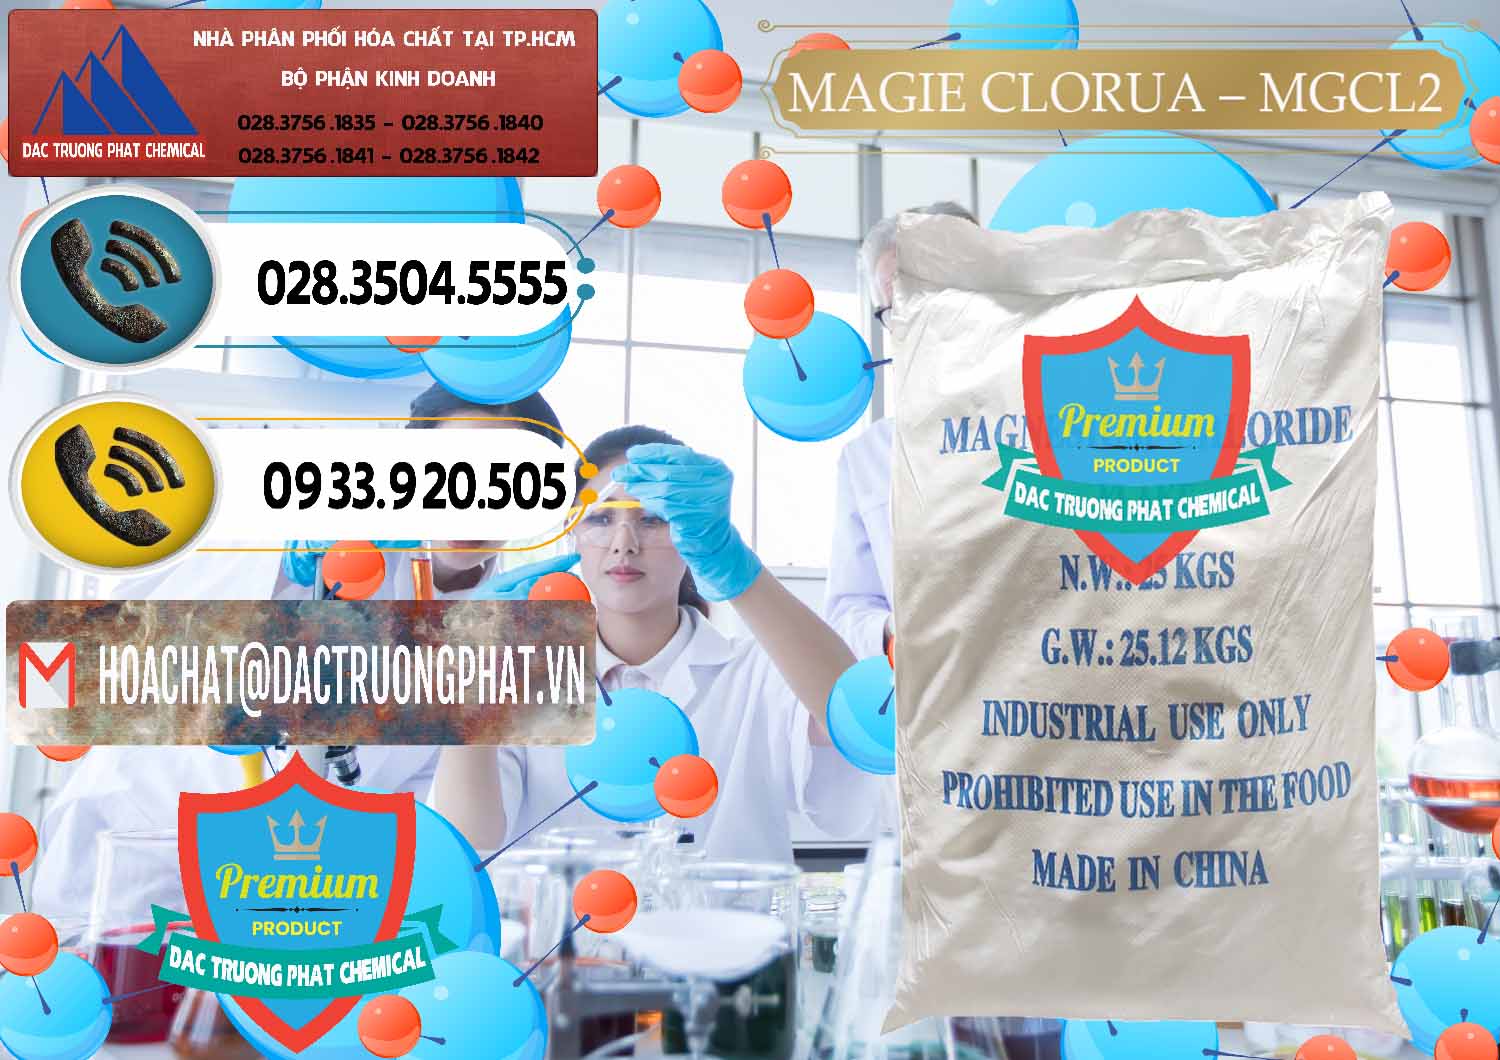 Nơi cung cấp - bán Magie Clorua – MGCL2 96% Dạng Vảy Trung Quốc China - 0091 - Công ty cung cấp và kinh doanh hóa chất tại TP.HCM - hoachatdetnhuom.vn